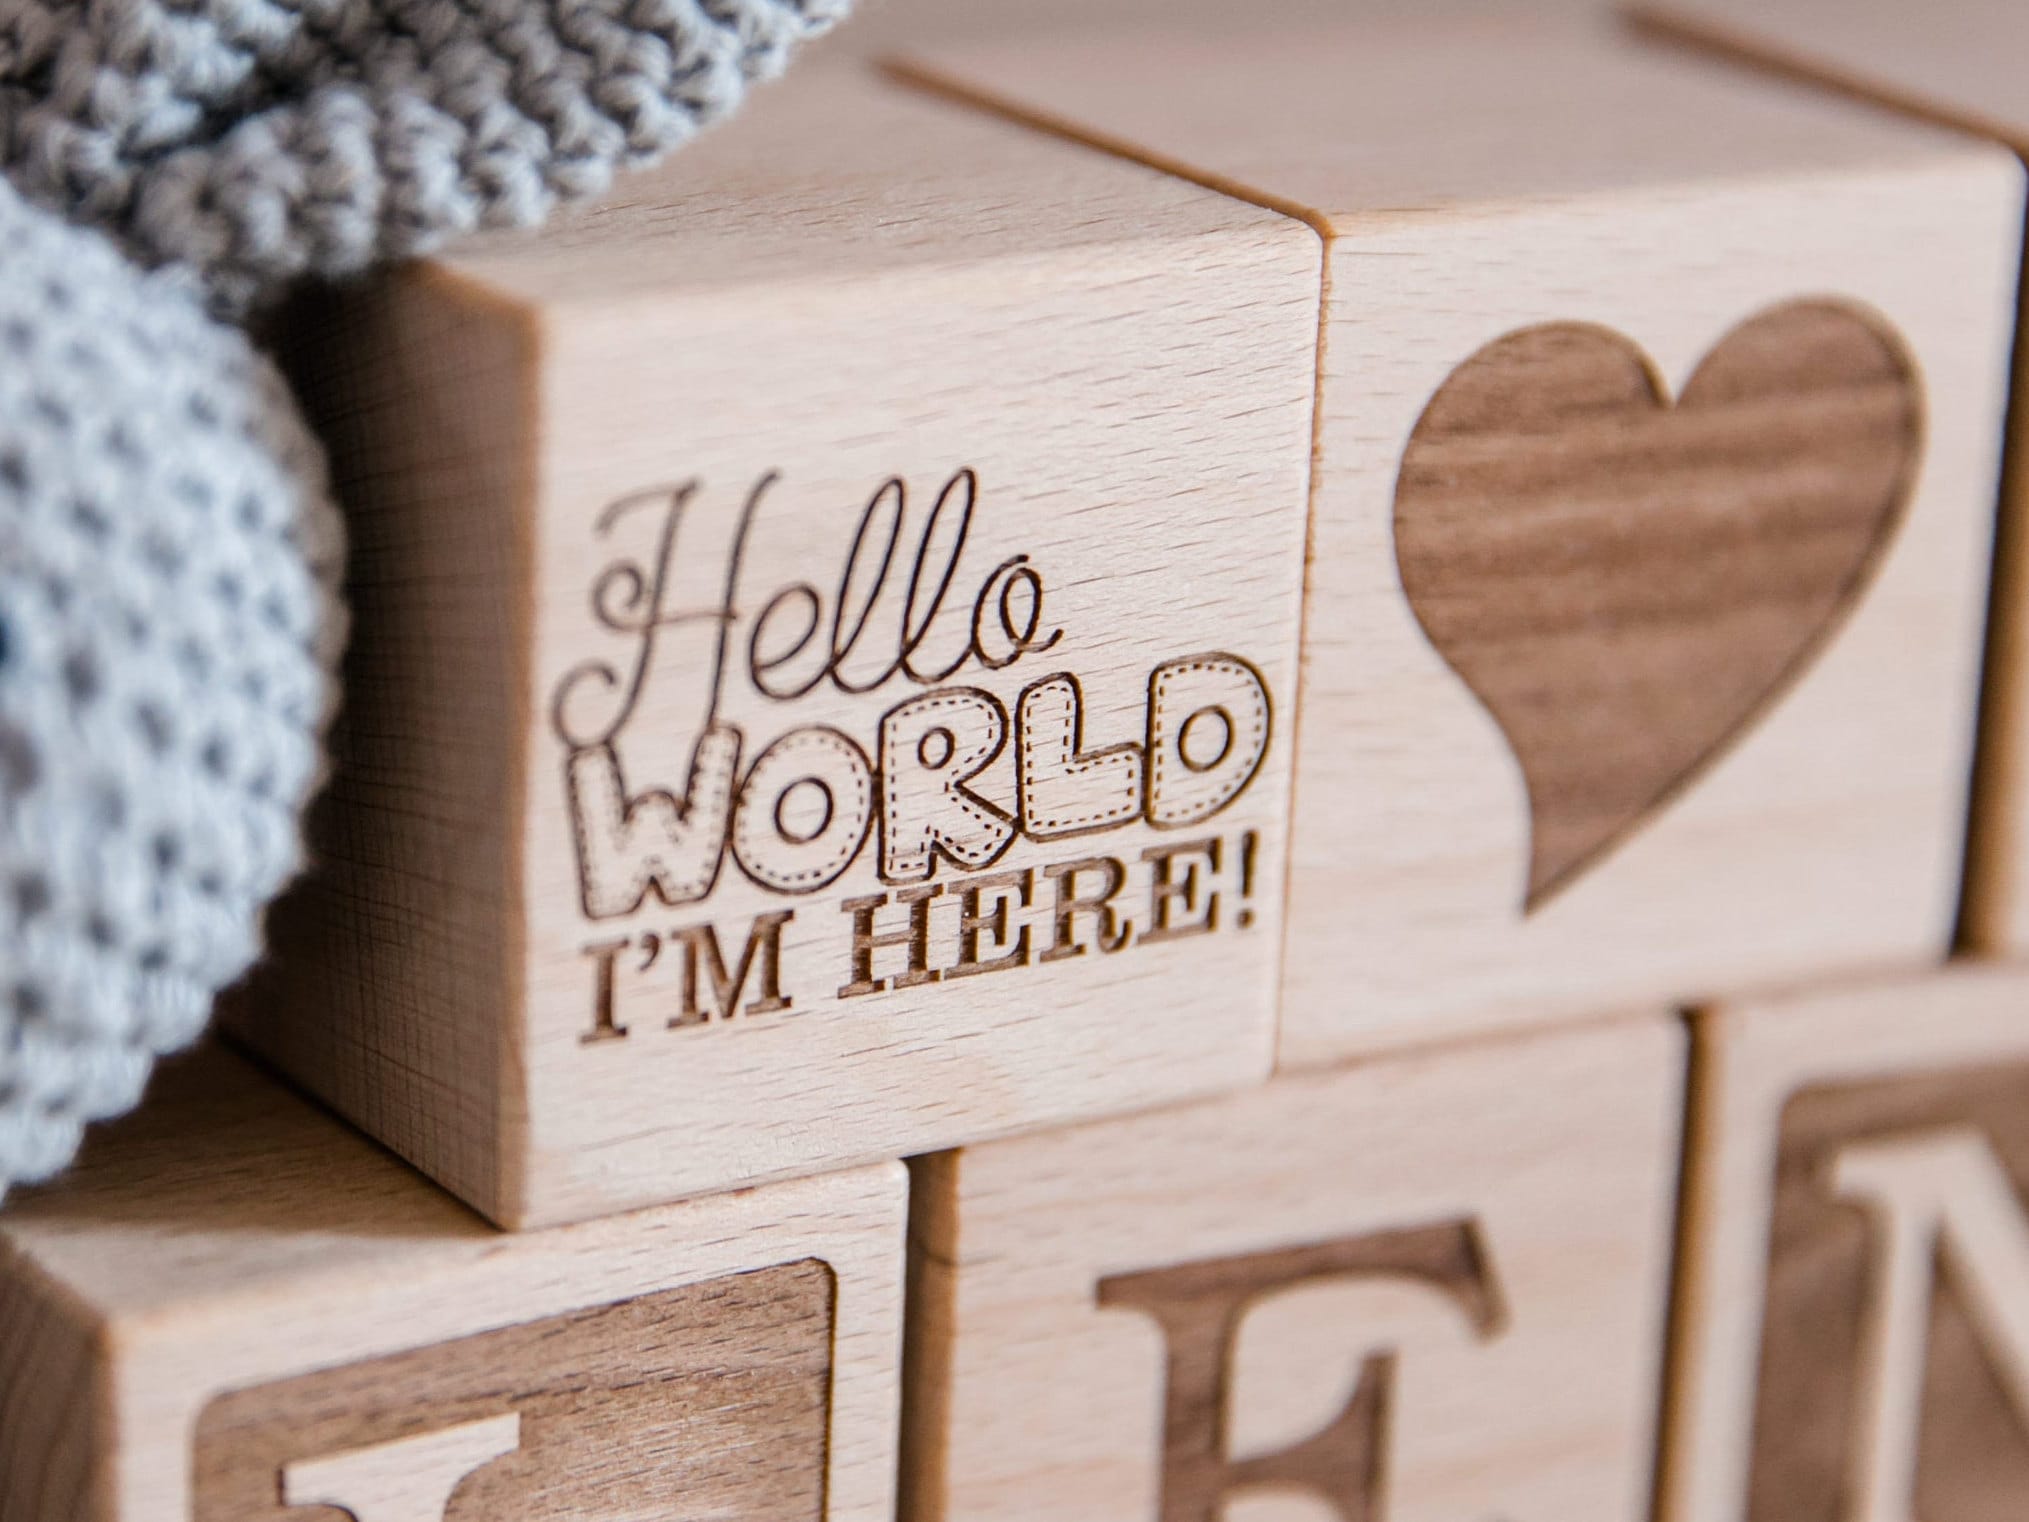 Holzwürfel mit Gravur / Geschenk Geburt / Buche 4cm / Geburtstag - Baby Geschenk personalisiert - Holzwürfel Baby - Buchstabenwürfel